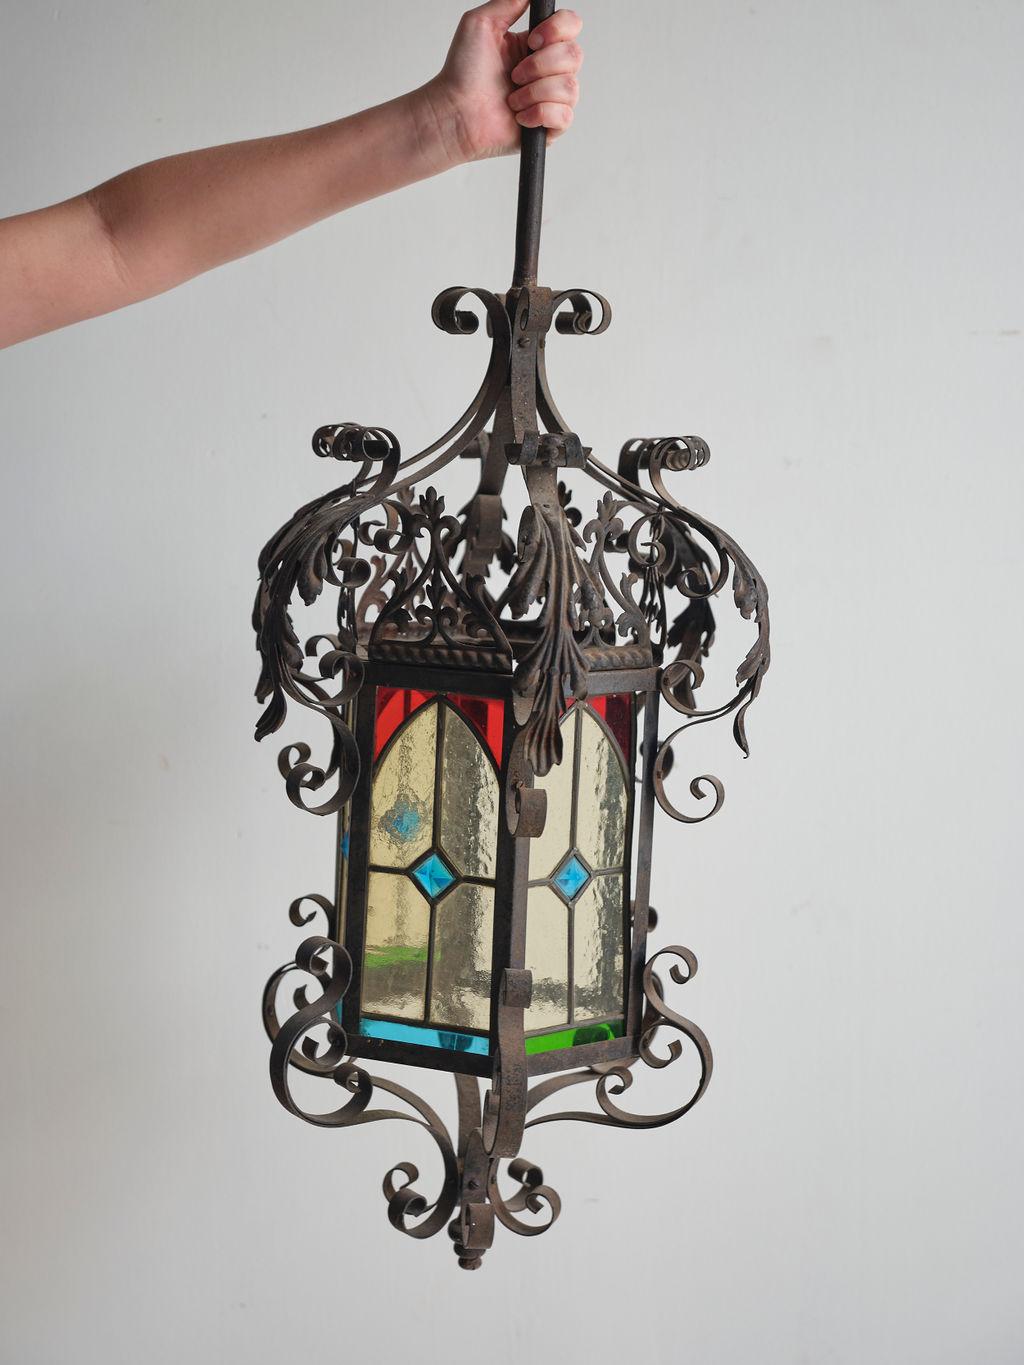 Cette superbe lanterne en fer à vitrail, fabriquée au début du 20e siècle, ajouterait une touche magnifique à n'importe quelle pièce où elle se trouverait. Le vitrail unique et les détails en fer courbé confèrent à cette lanterne un aspect